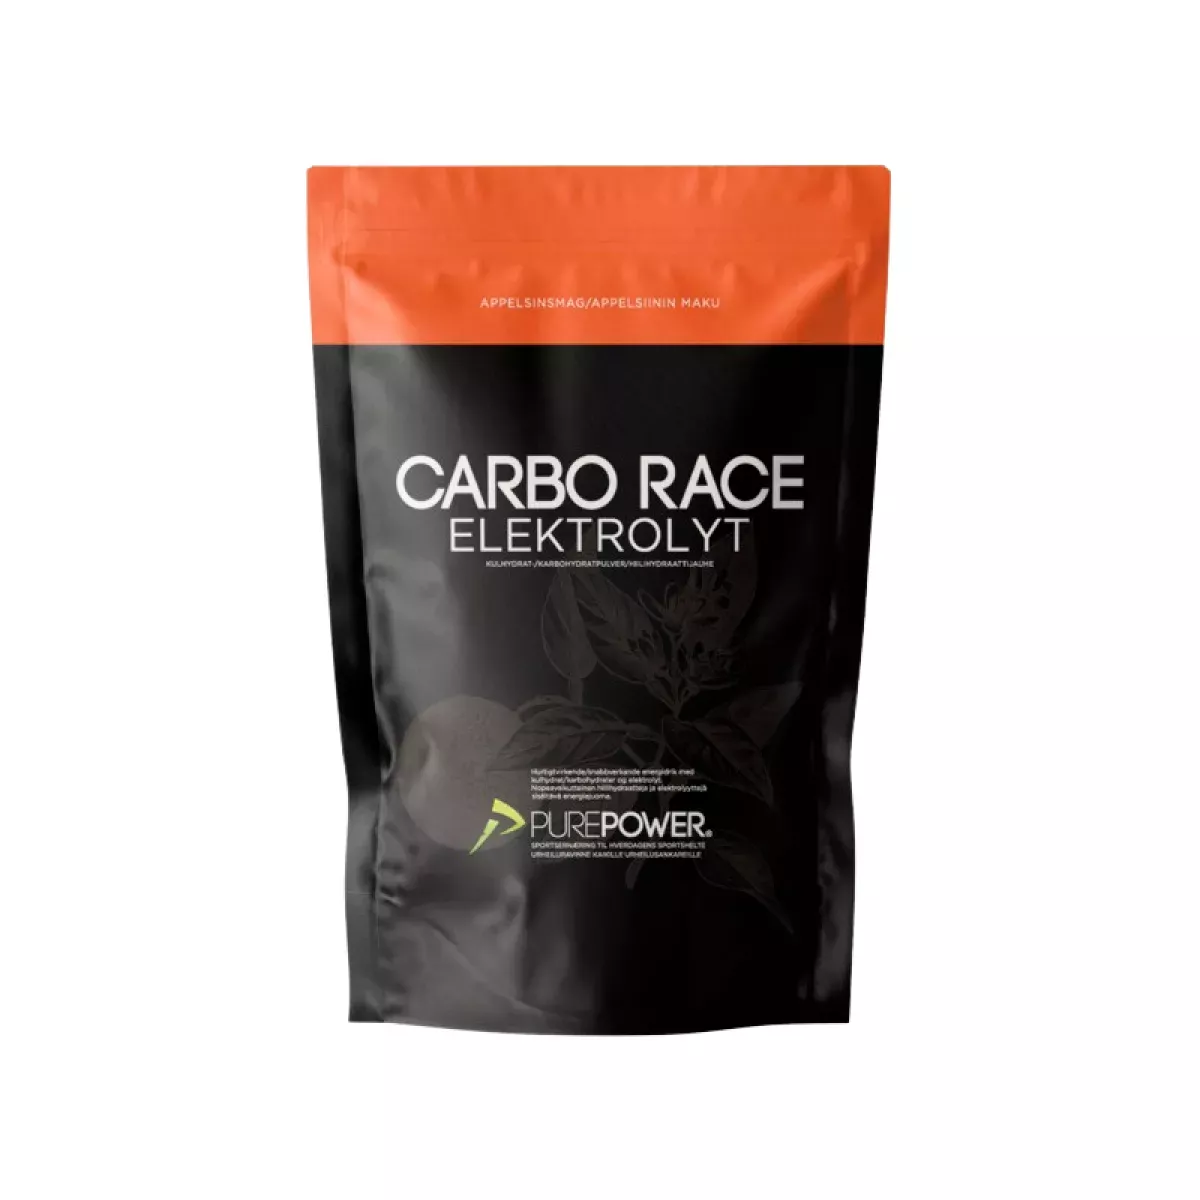 #1 - PurePower Carbo Race Elektrolyt appelsin - 1 kg